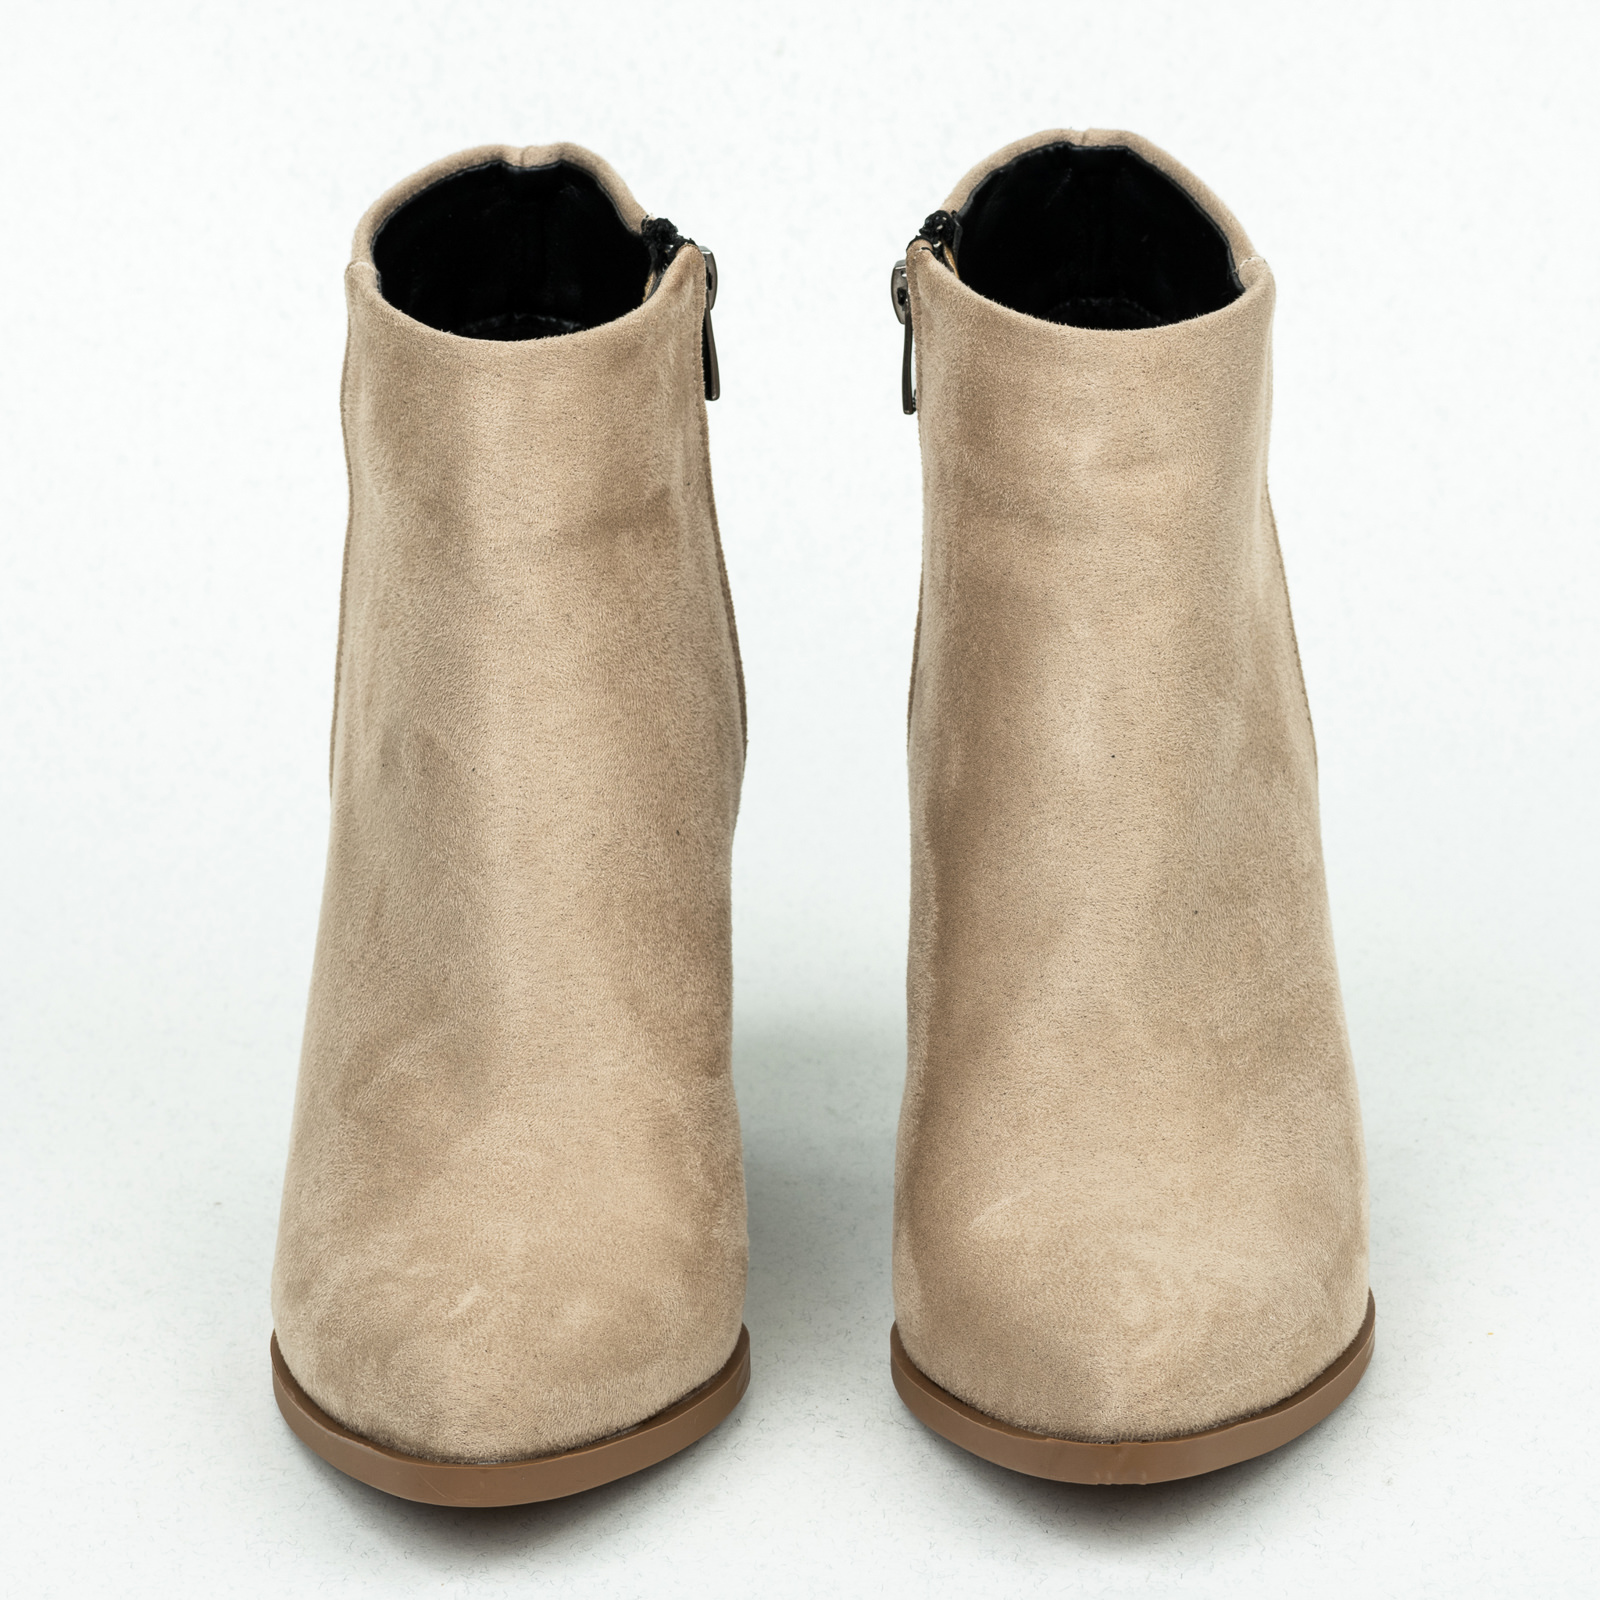 Women ankle boots B162 - BEIGE